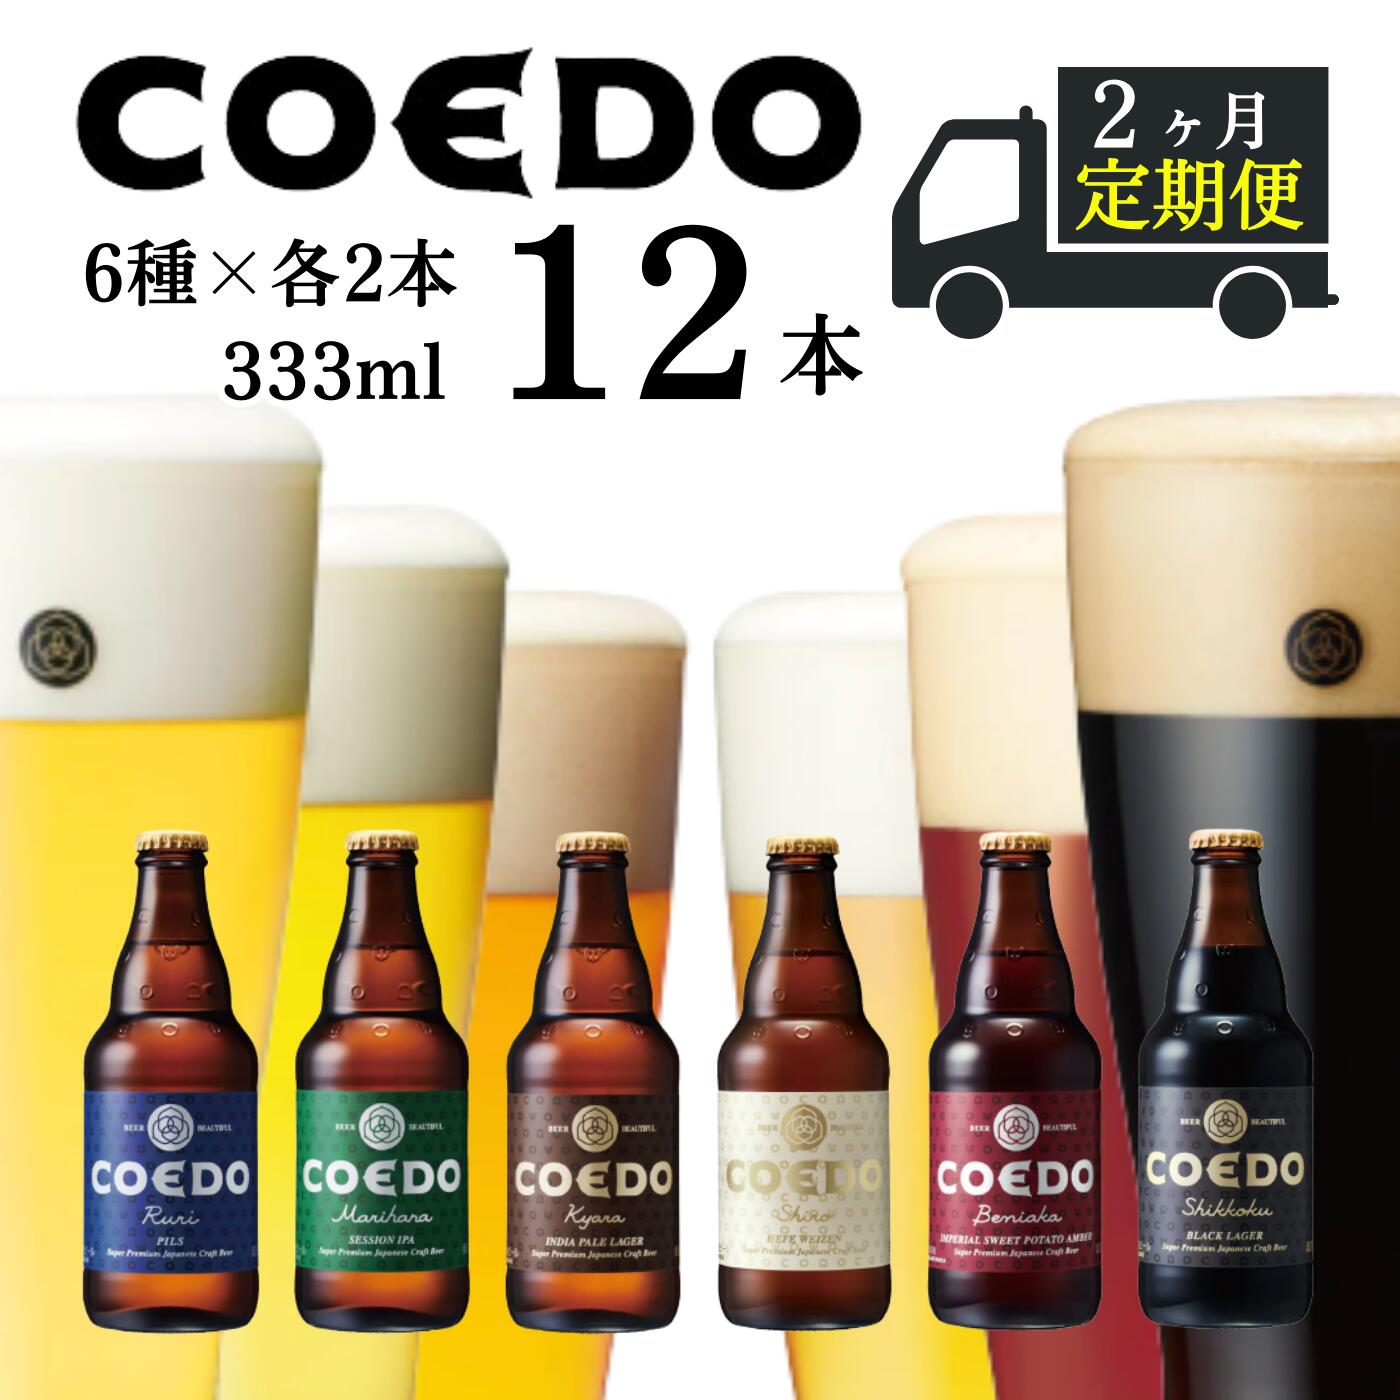  ＜2ヶ月定期便＞コエドビール 瓶6種類12本セット (333ml×12本)計3996ml